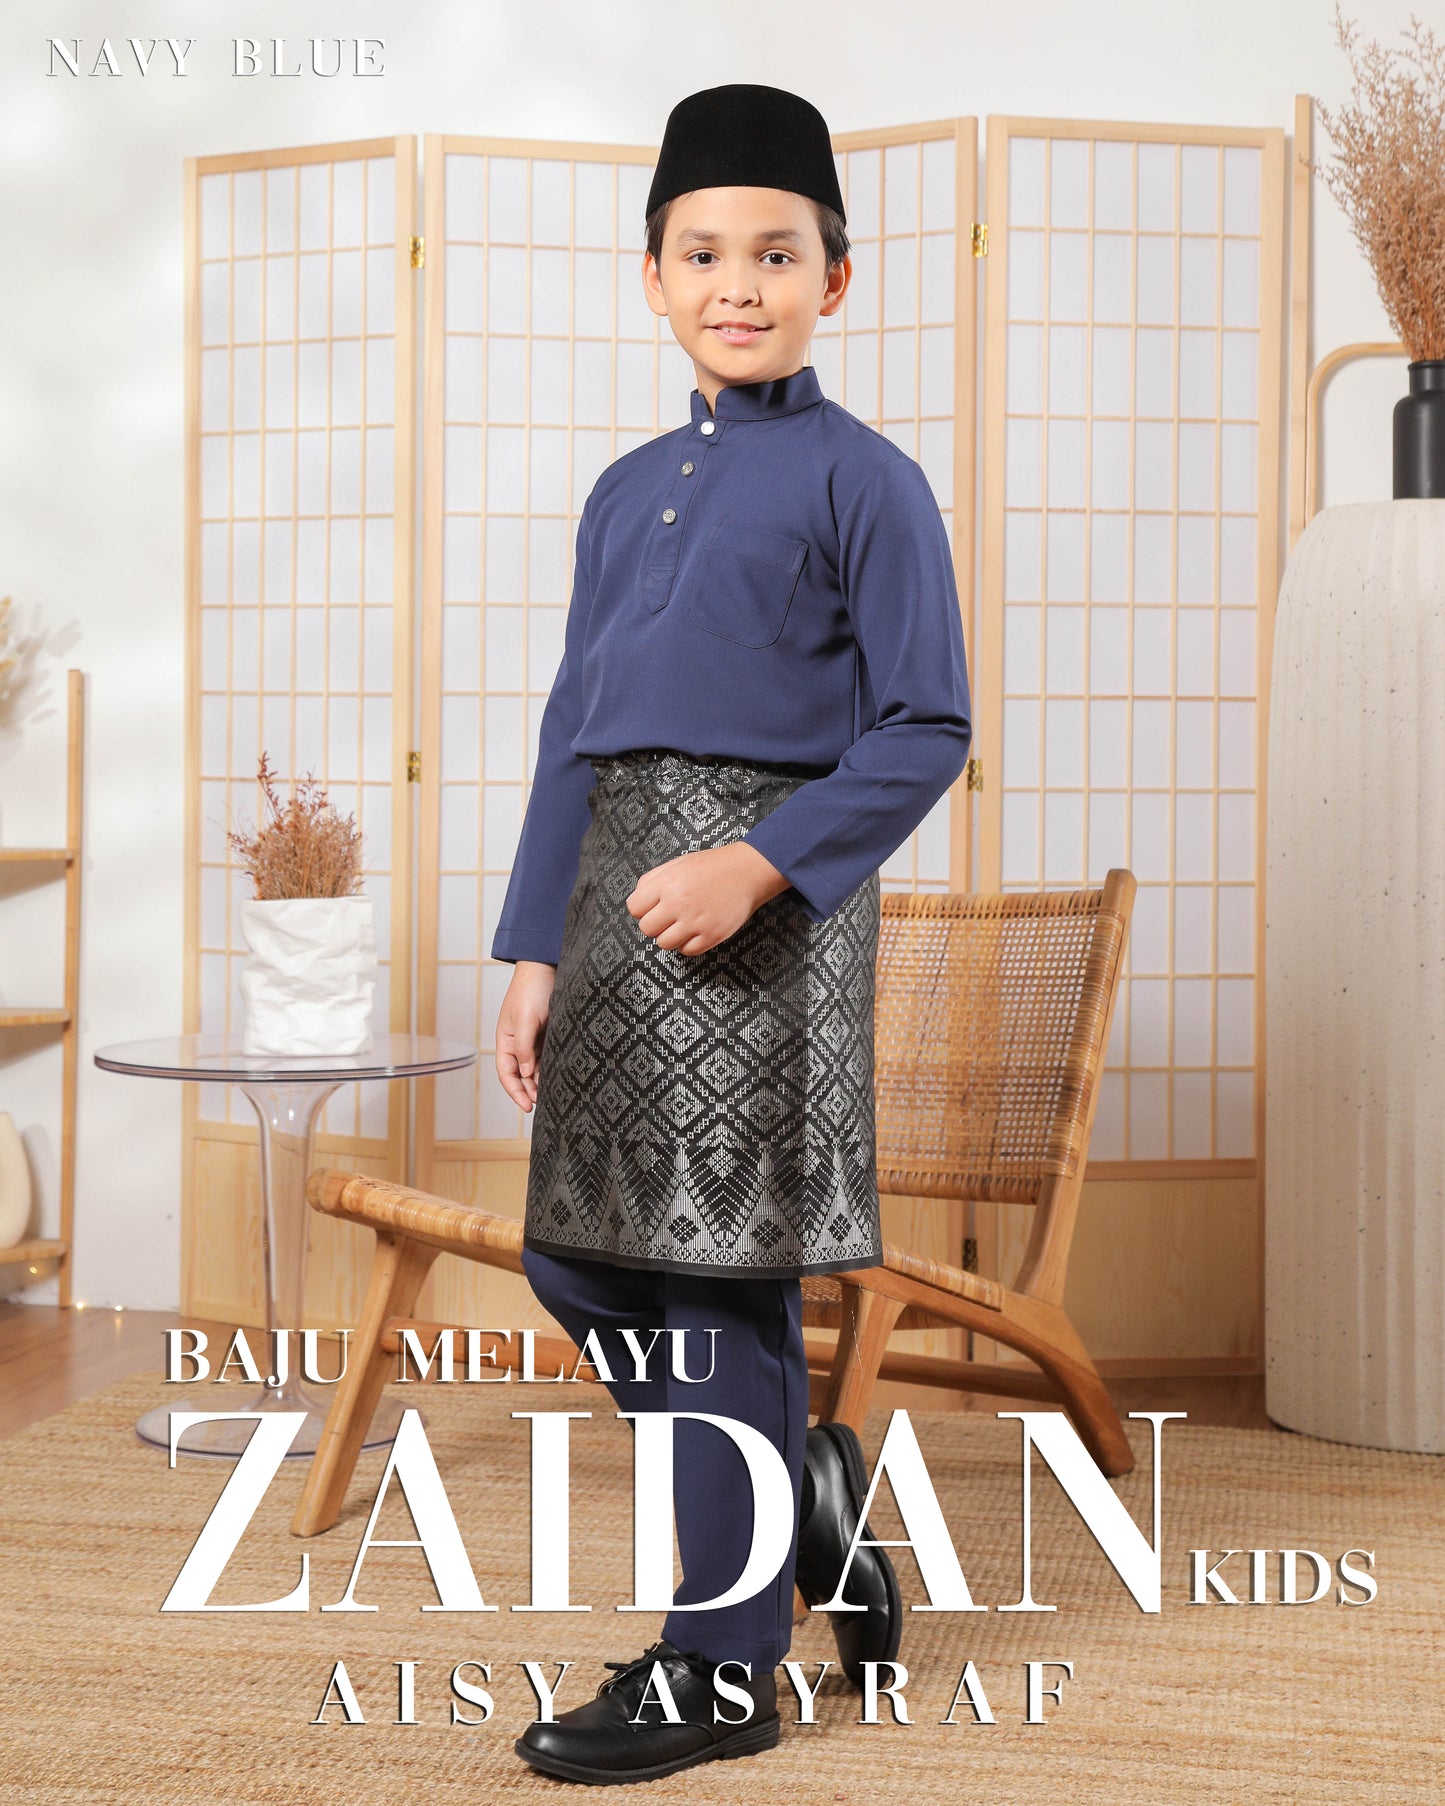 Baju Melayu Zaidan Kids - Navy Blue